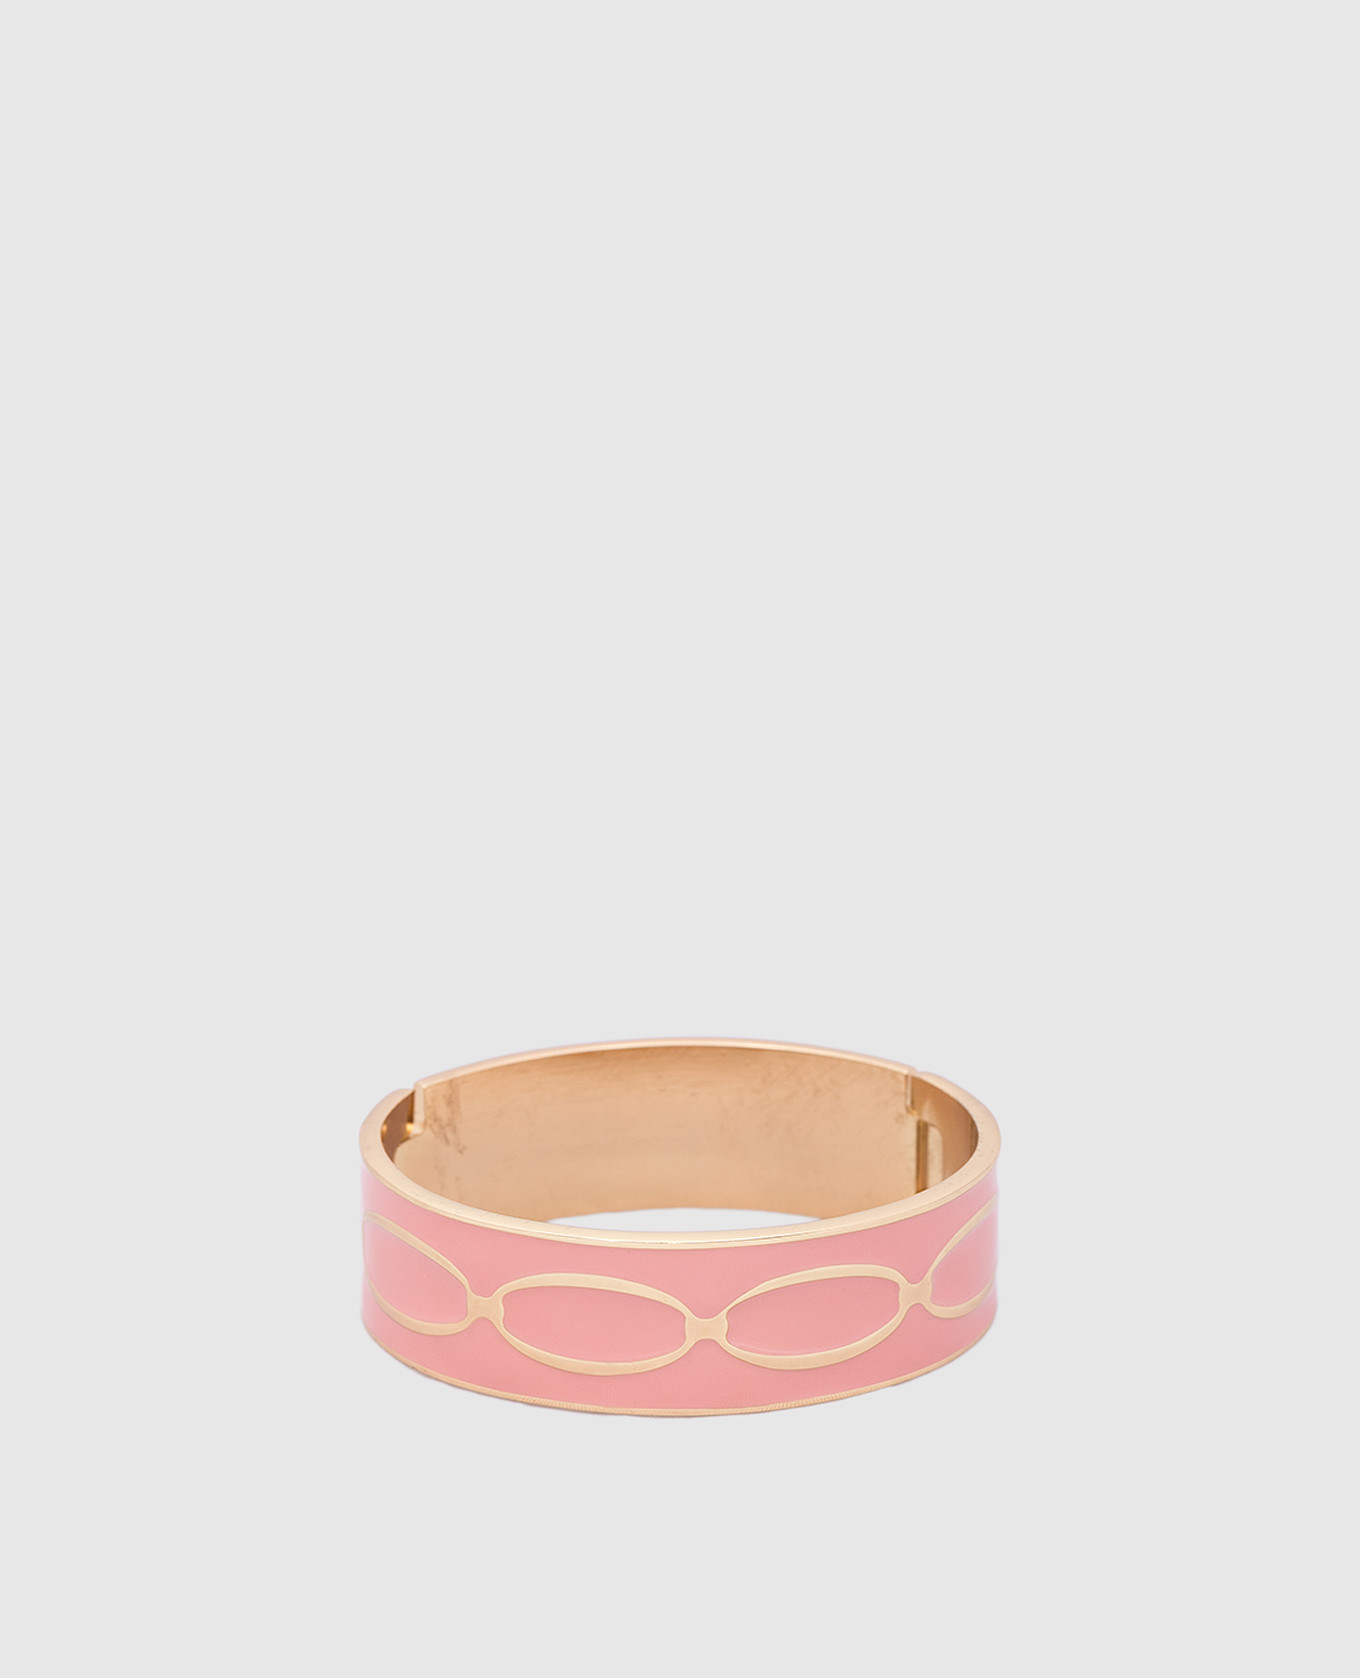 Розовый браслет Knot с покрытием 24-каратным золотом.